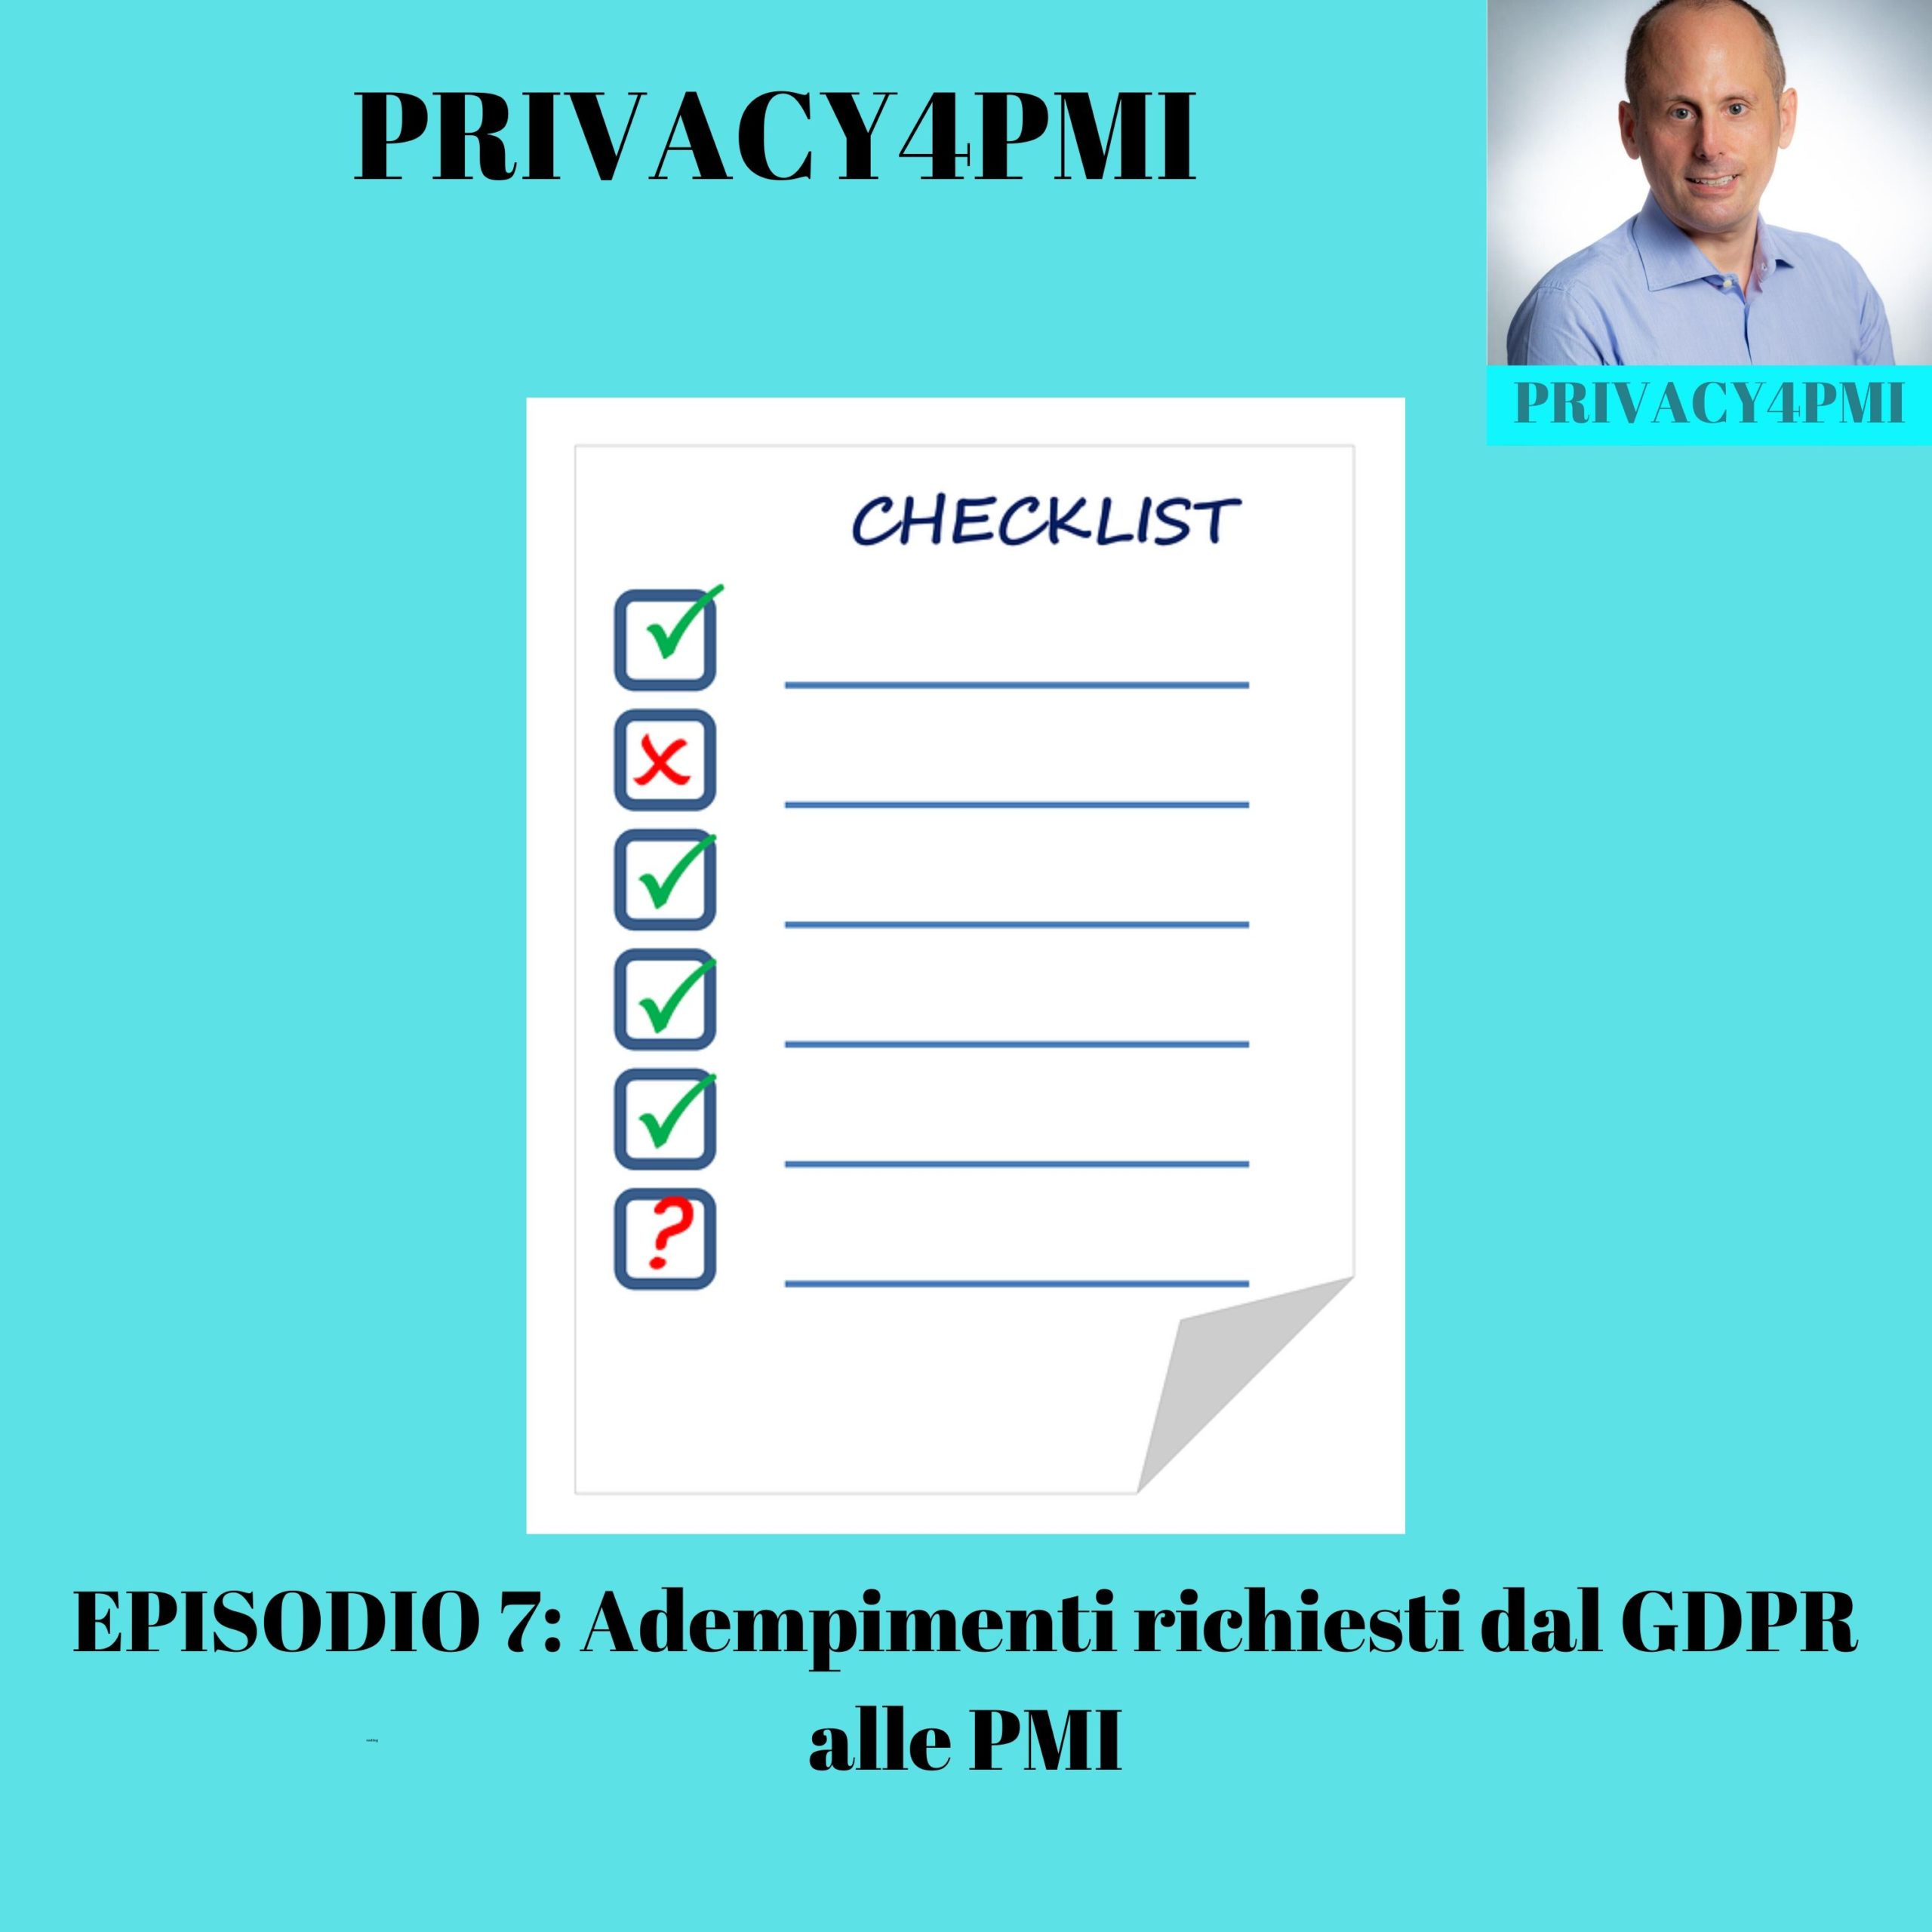 Adempimenti GDPR per le PMI. Quali sono? Come vanno svolti? Lo spiega Edoardo Facchini, consulente privacy in questo episodio 7 del suo podcast Privacy4PMI.